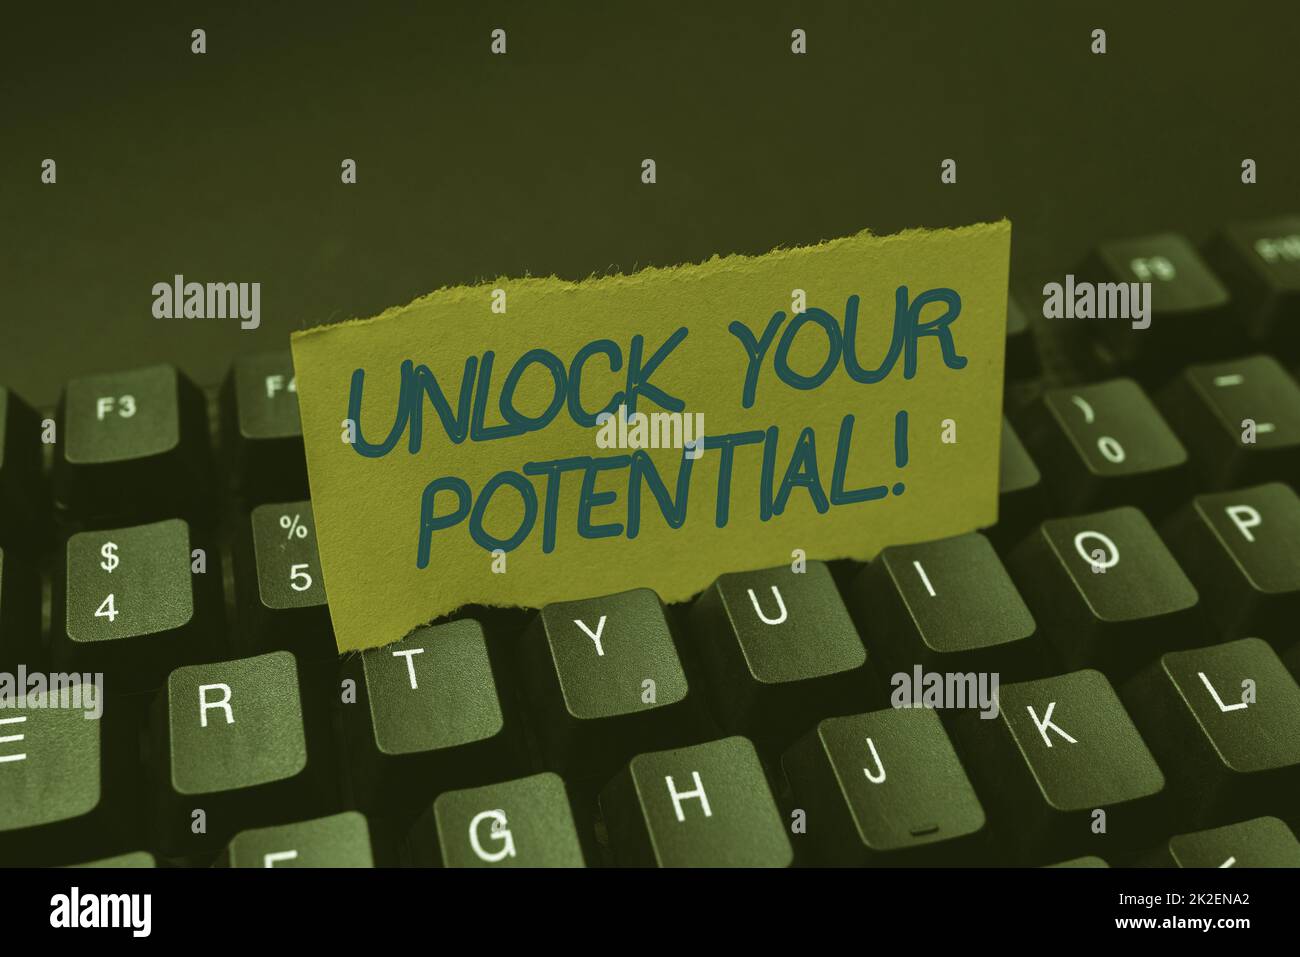 Affiche textuelle indiquant Unlock Your Potential. Mot pour maximiser la force et la capacité faire une différence Créer un nouveau livre de cuisine en ligne, taper et partager des recettes de cuisine Banque D'Images